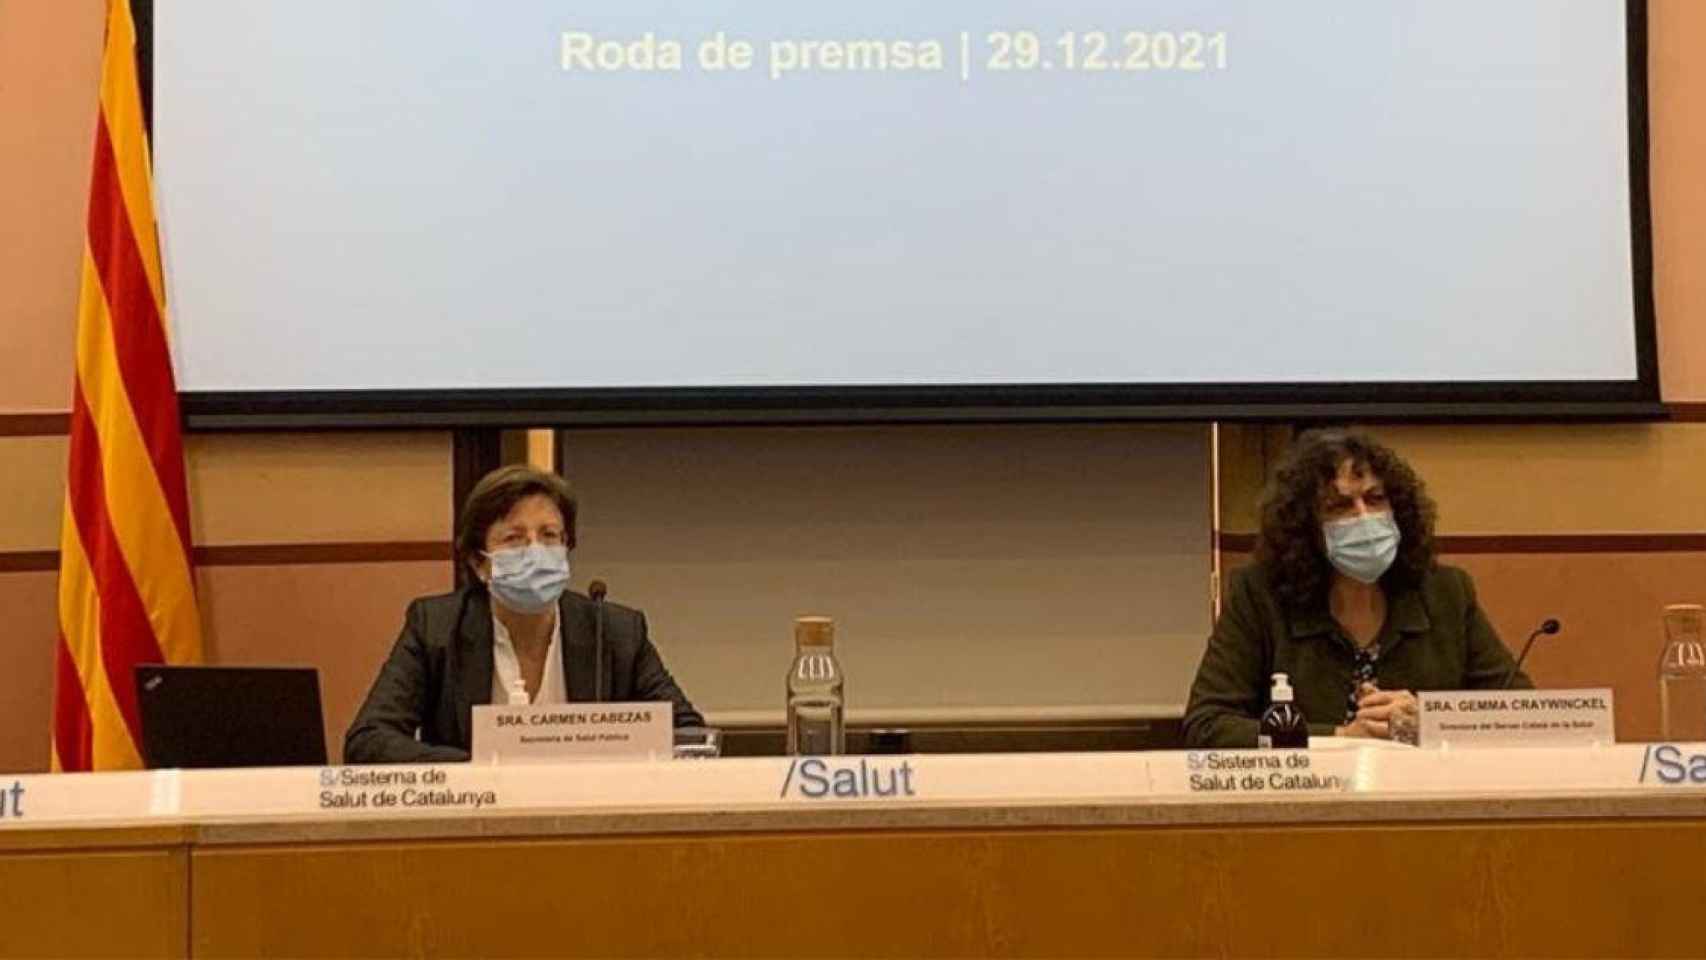 La secretaria de Salud Pública en Cataluña, Carmen Cabezas, y la directora del CatSalut, Gemma Craywinckel, en rueda de prensa / SALUD